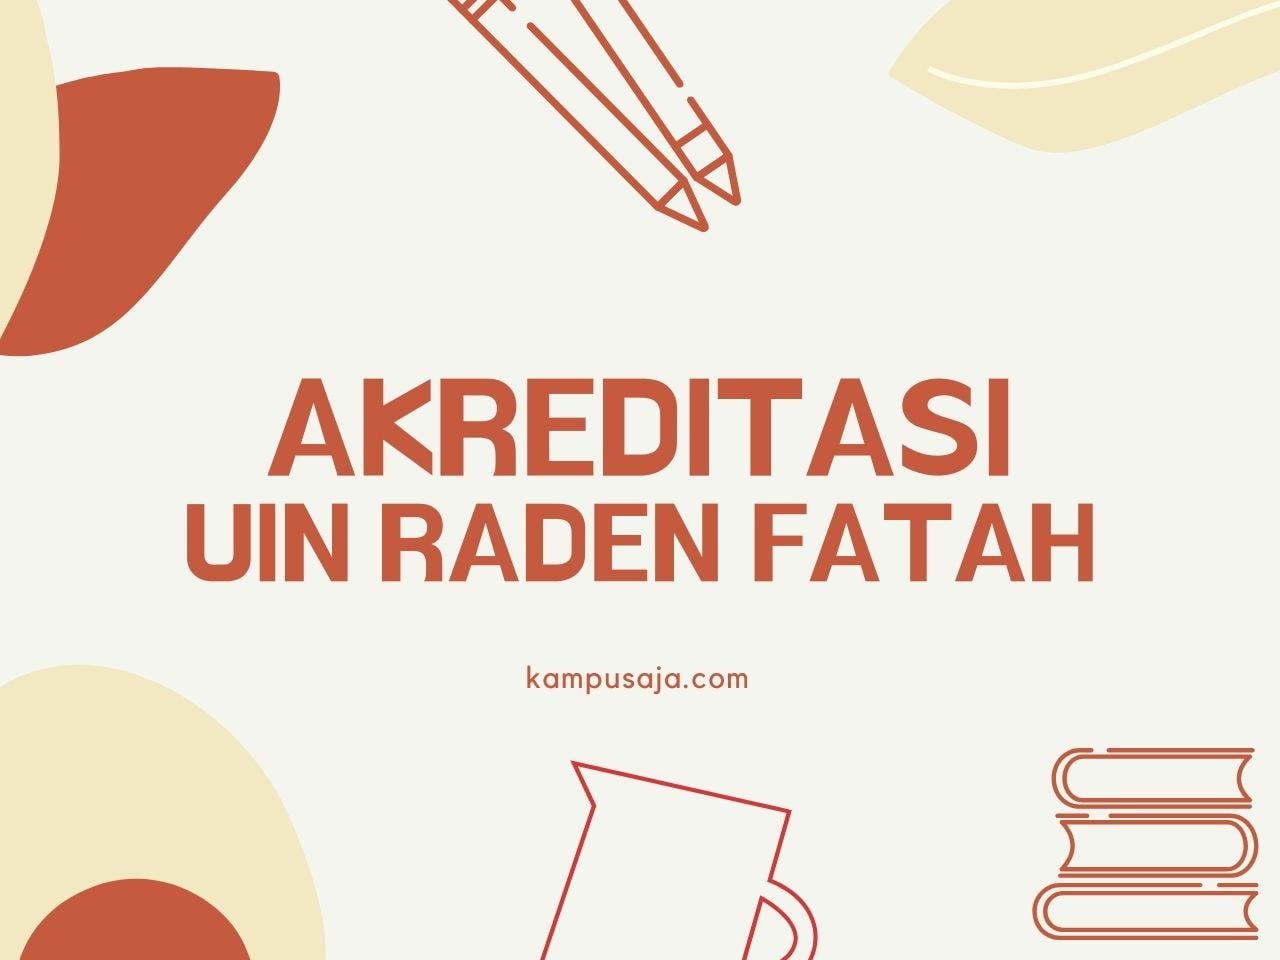 Akreditasi Program Studi UIN Raden Fatah